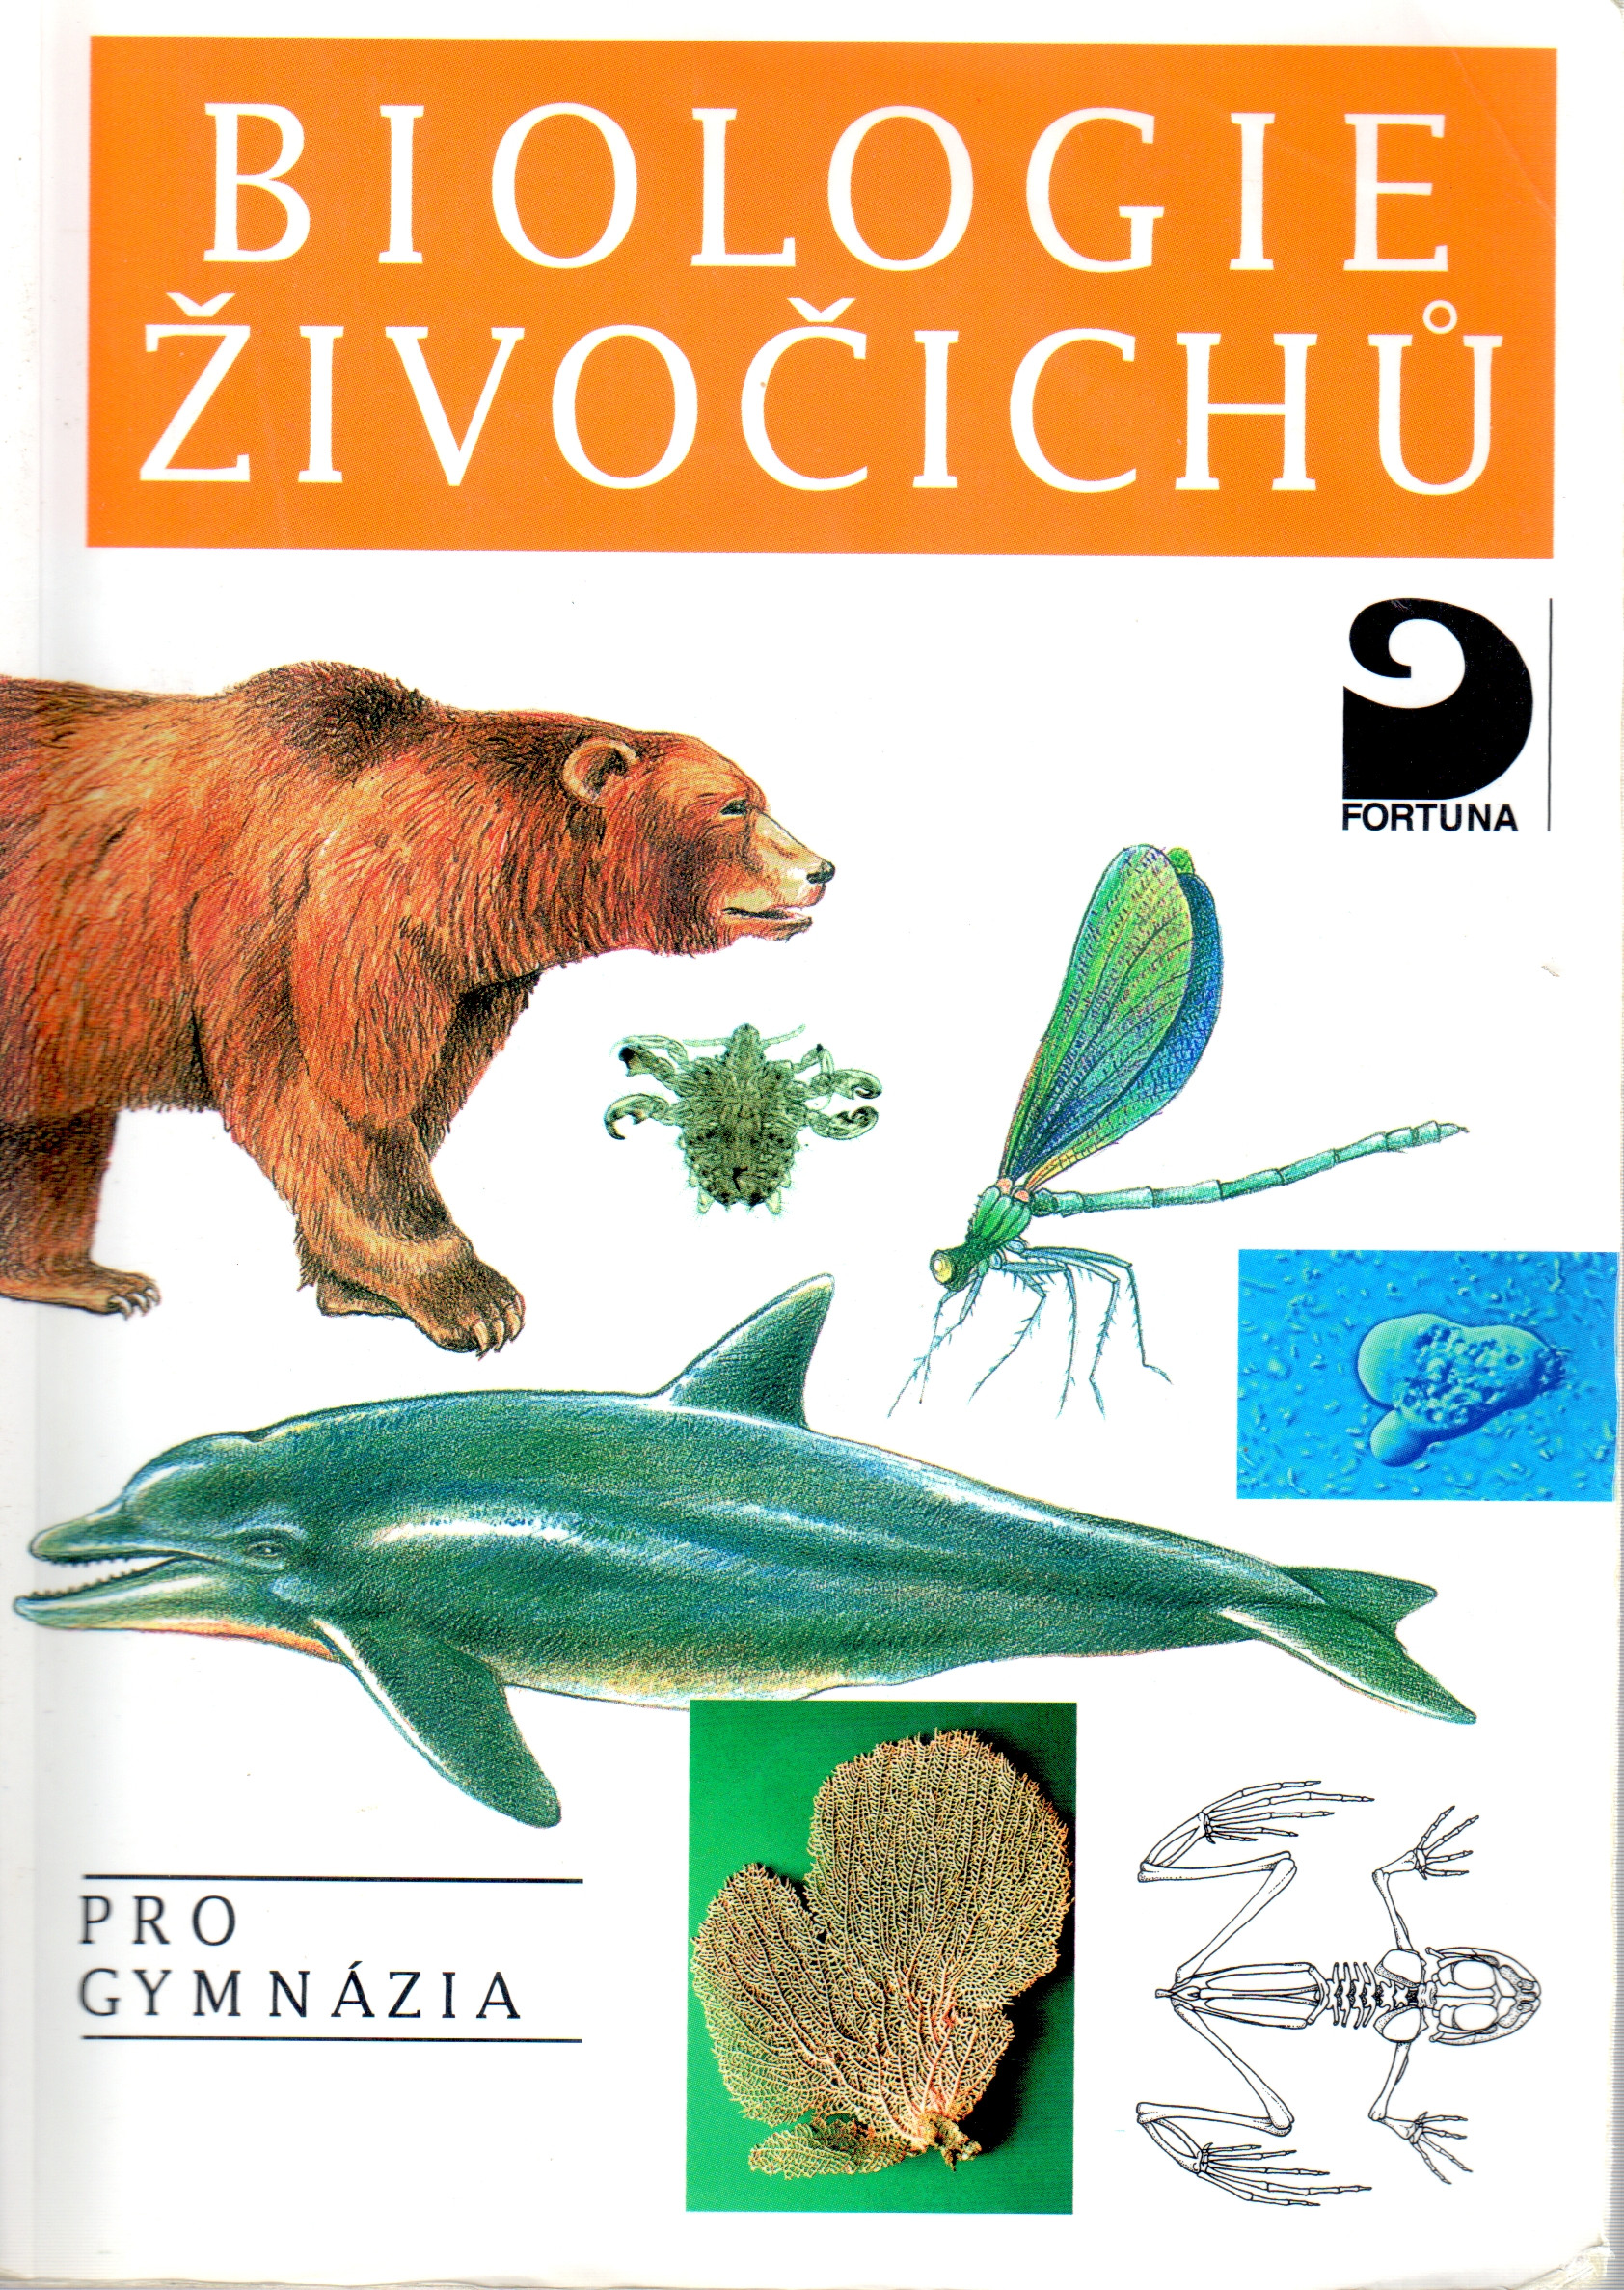 Biologie živočichů pro gymnázia - Náhled učebnice